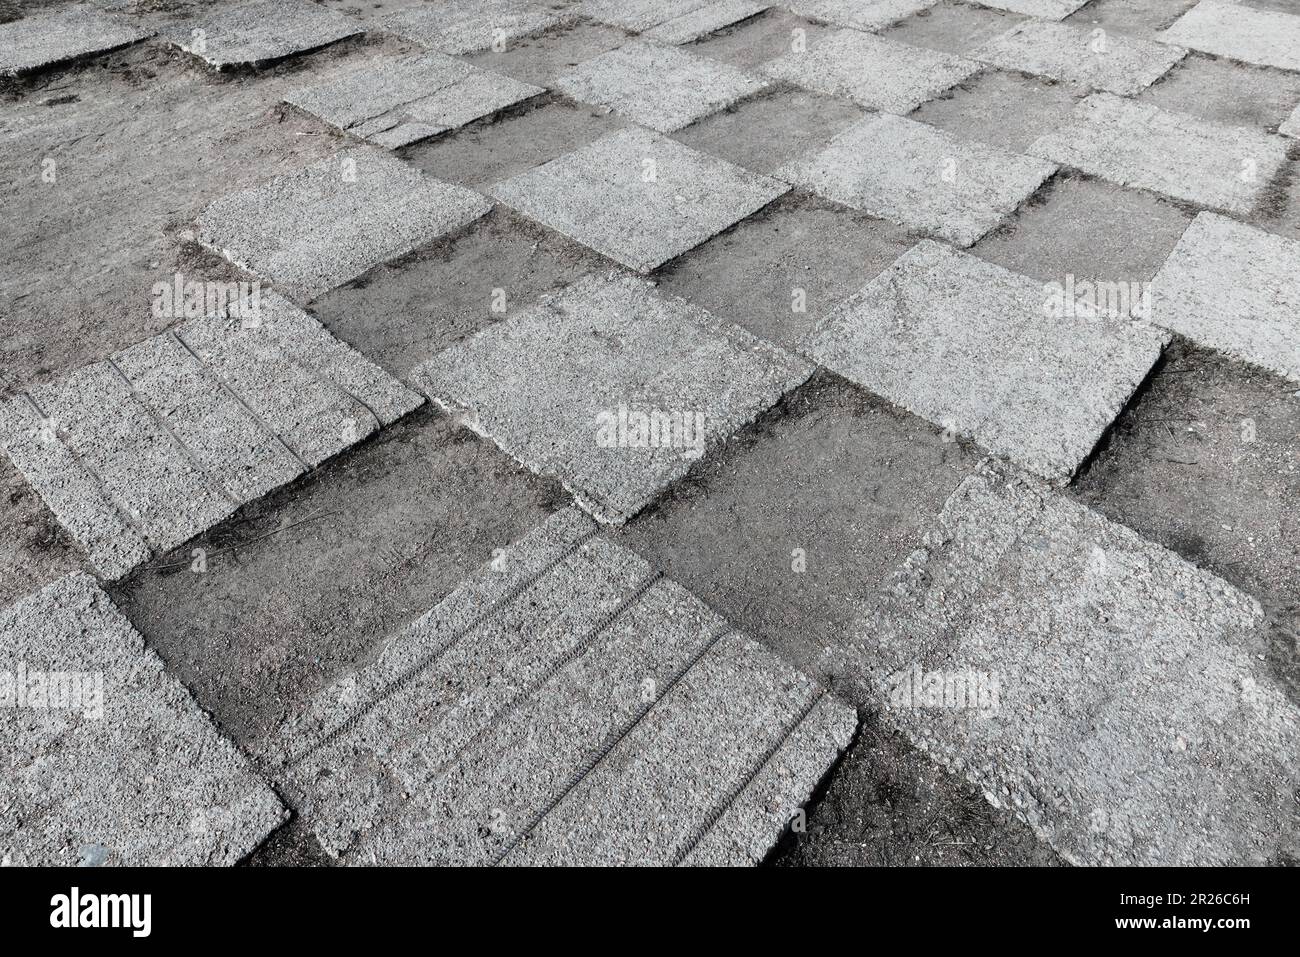 Grunglige Betonfliesen eines städtischen Gehwegs lagen auf einem grauen, staubigen Boden mit Schachbrettmuster, abstraktes Hintergrundbild Stockfoto